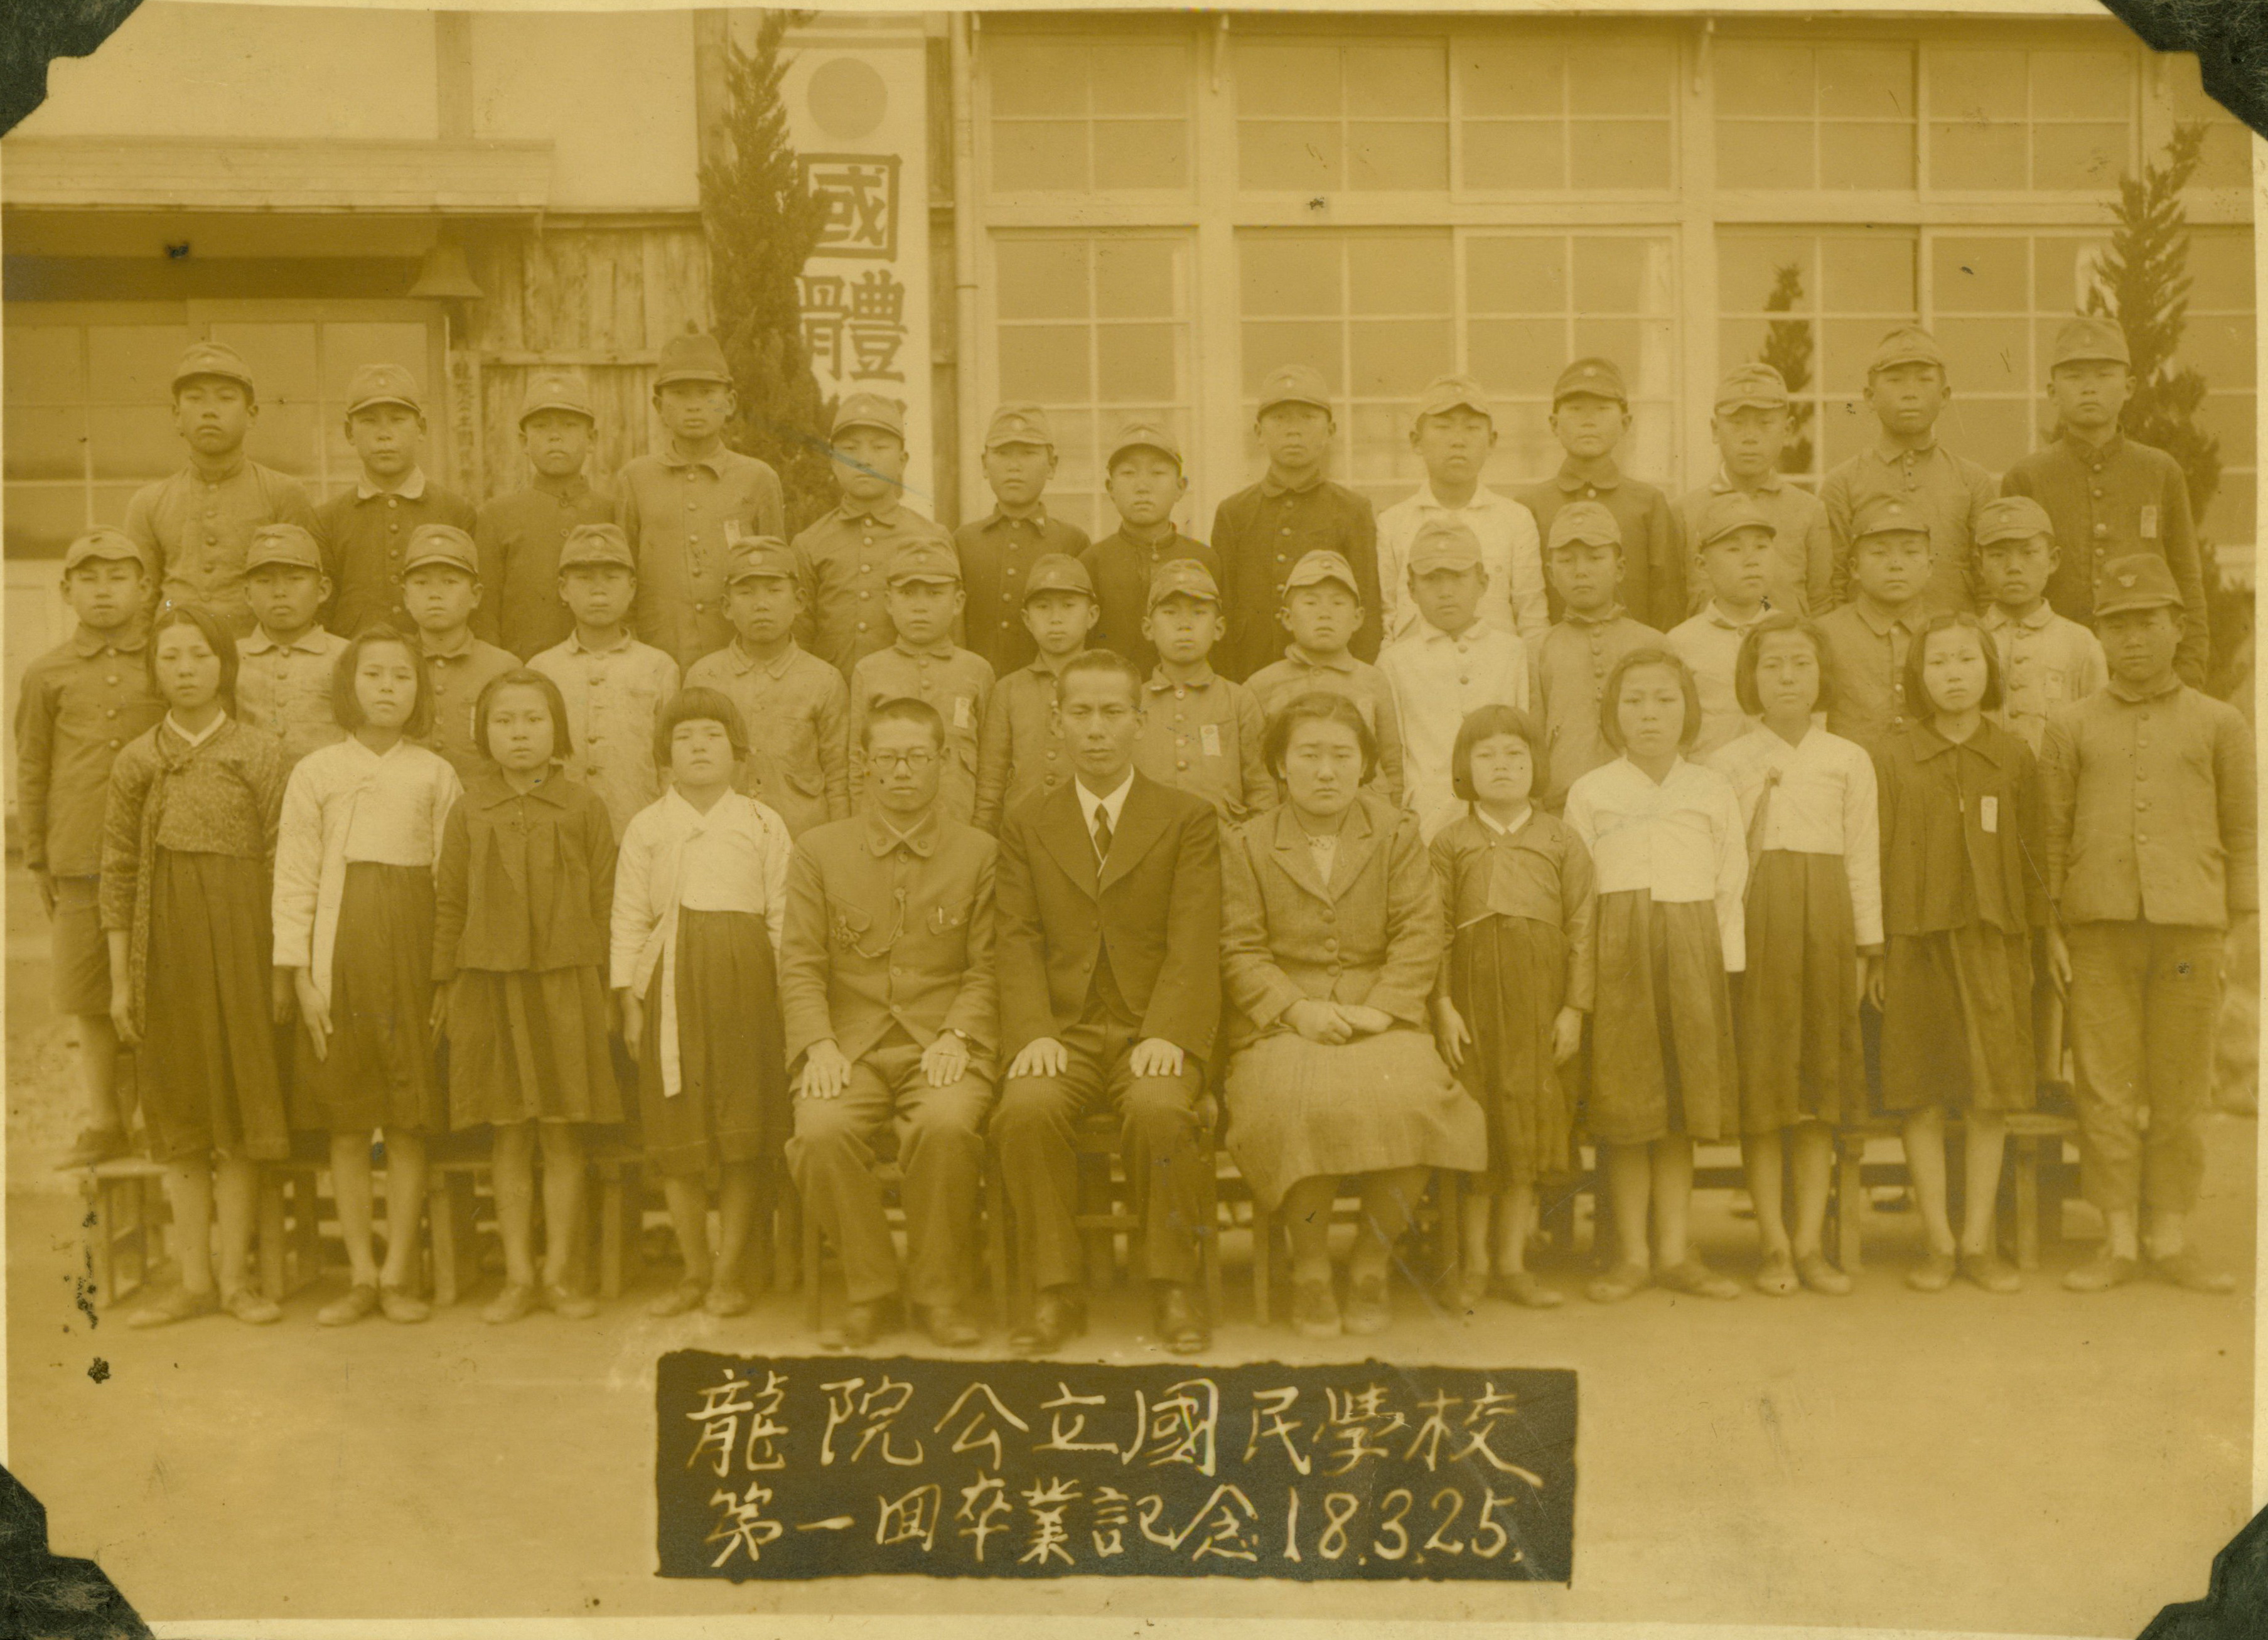 용원공립국민학교 제1회 졸업기념 - 1943년